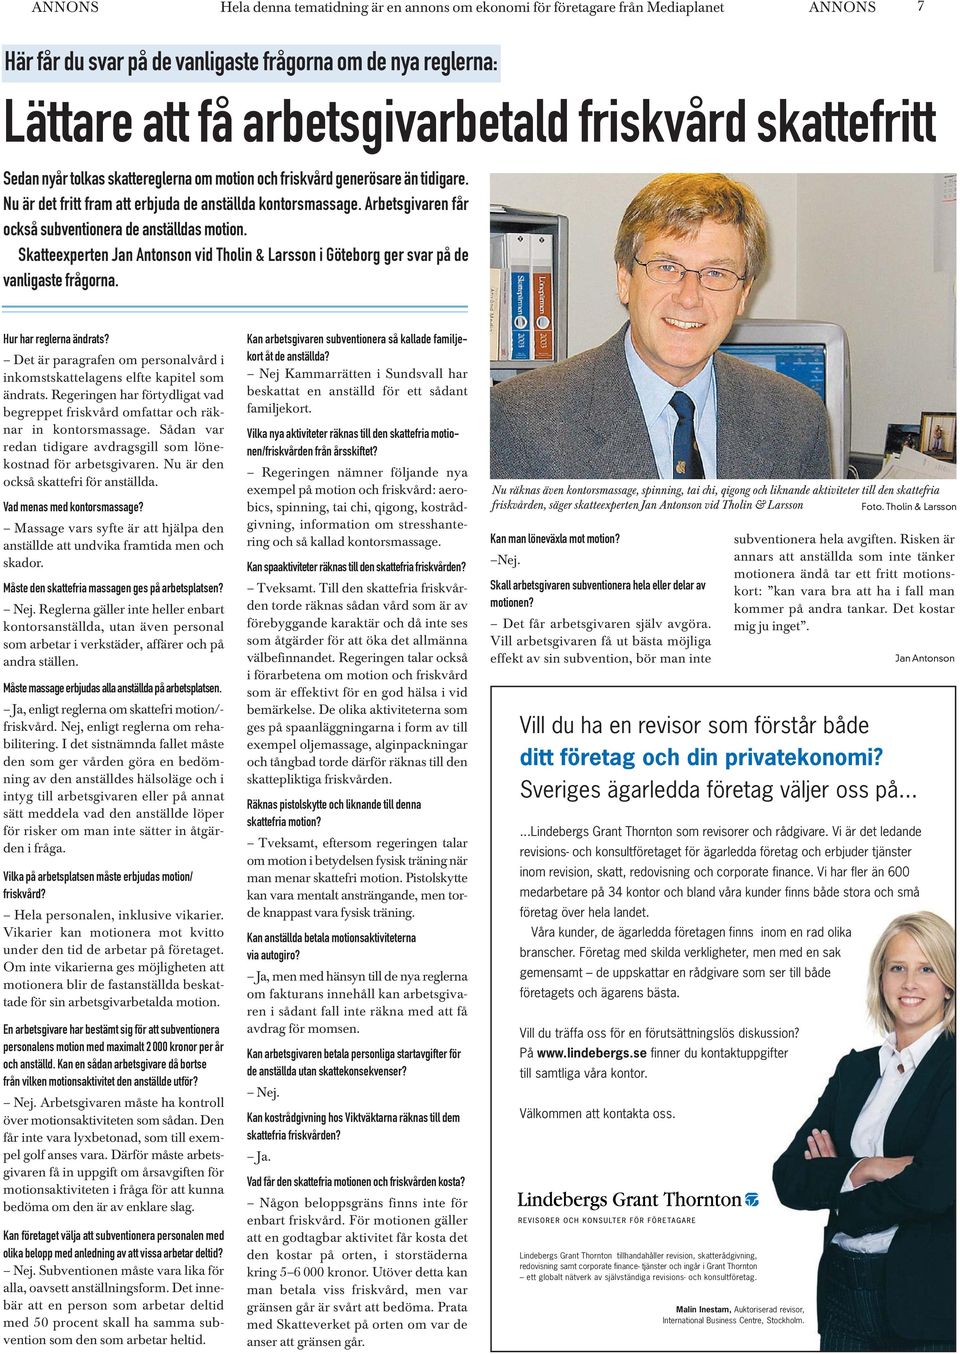 Arbetsgivaren får också subventionera de anställdas motion. Skatteexperten Jan Antonson vid Tholin & Larsson i Göteborg ger svar på de vanligaste frågorna. Hur har reglerna ändrats?